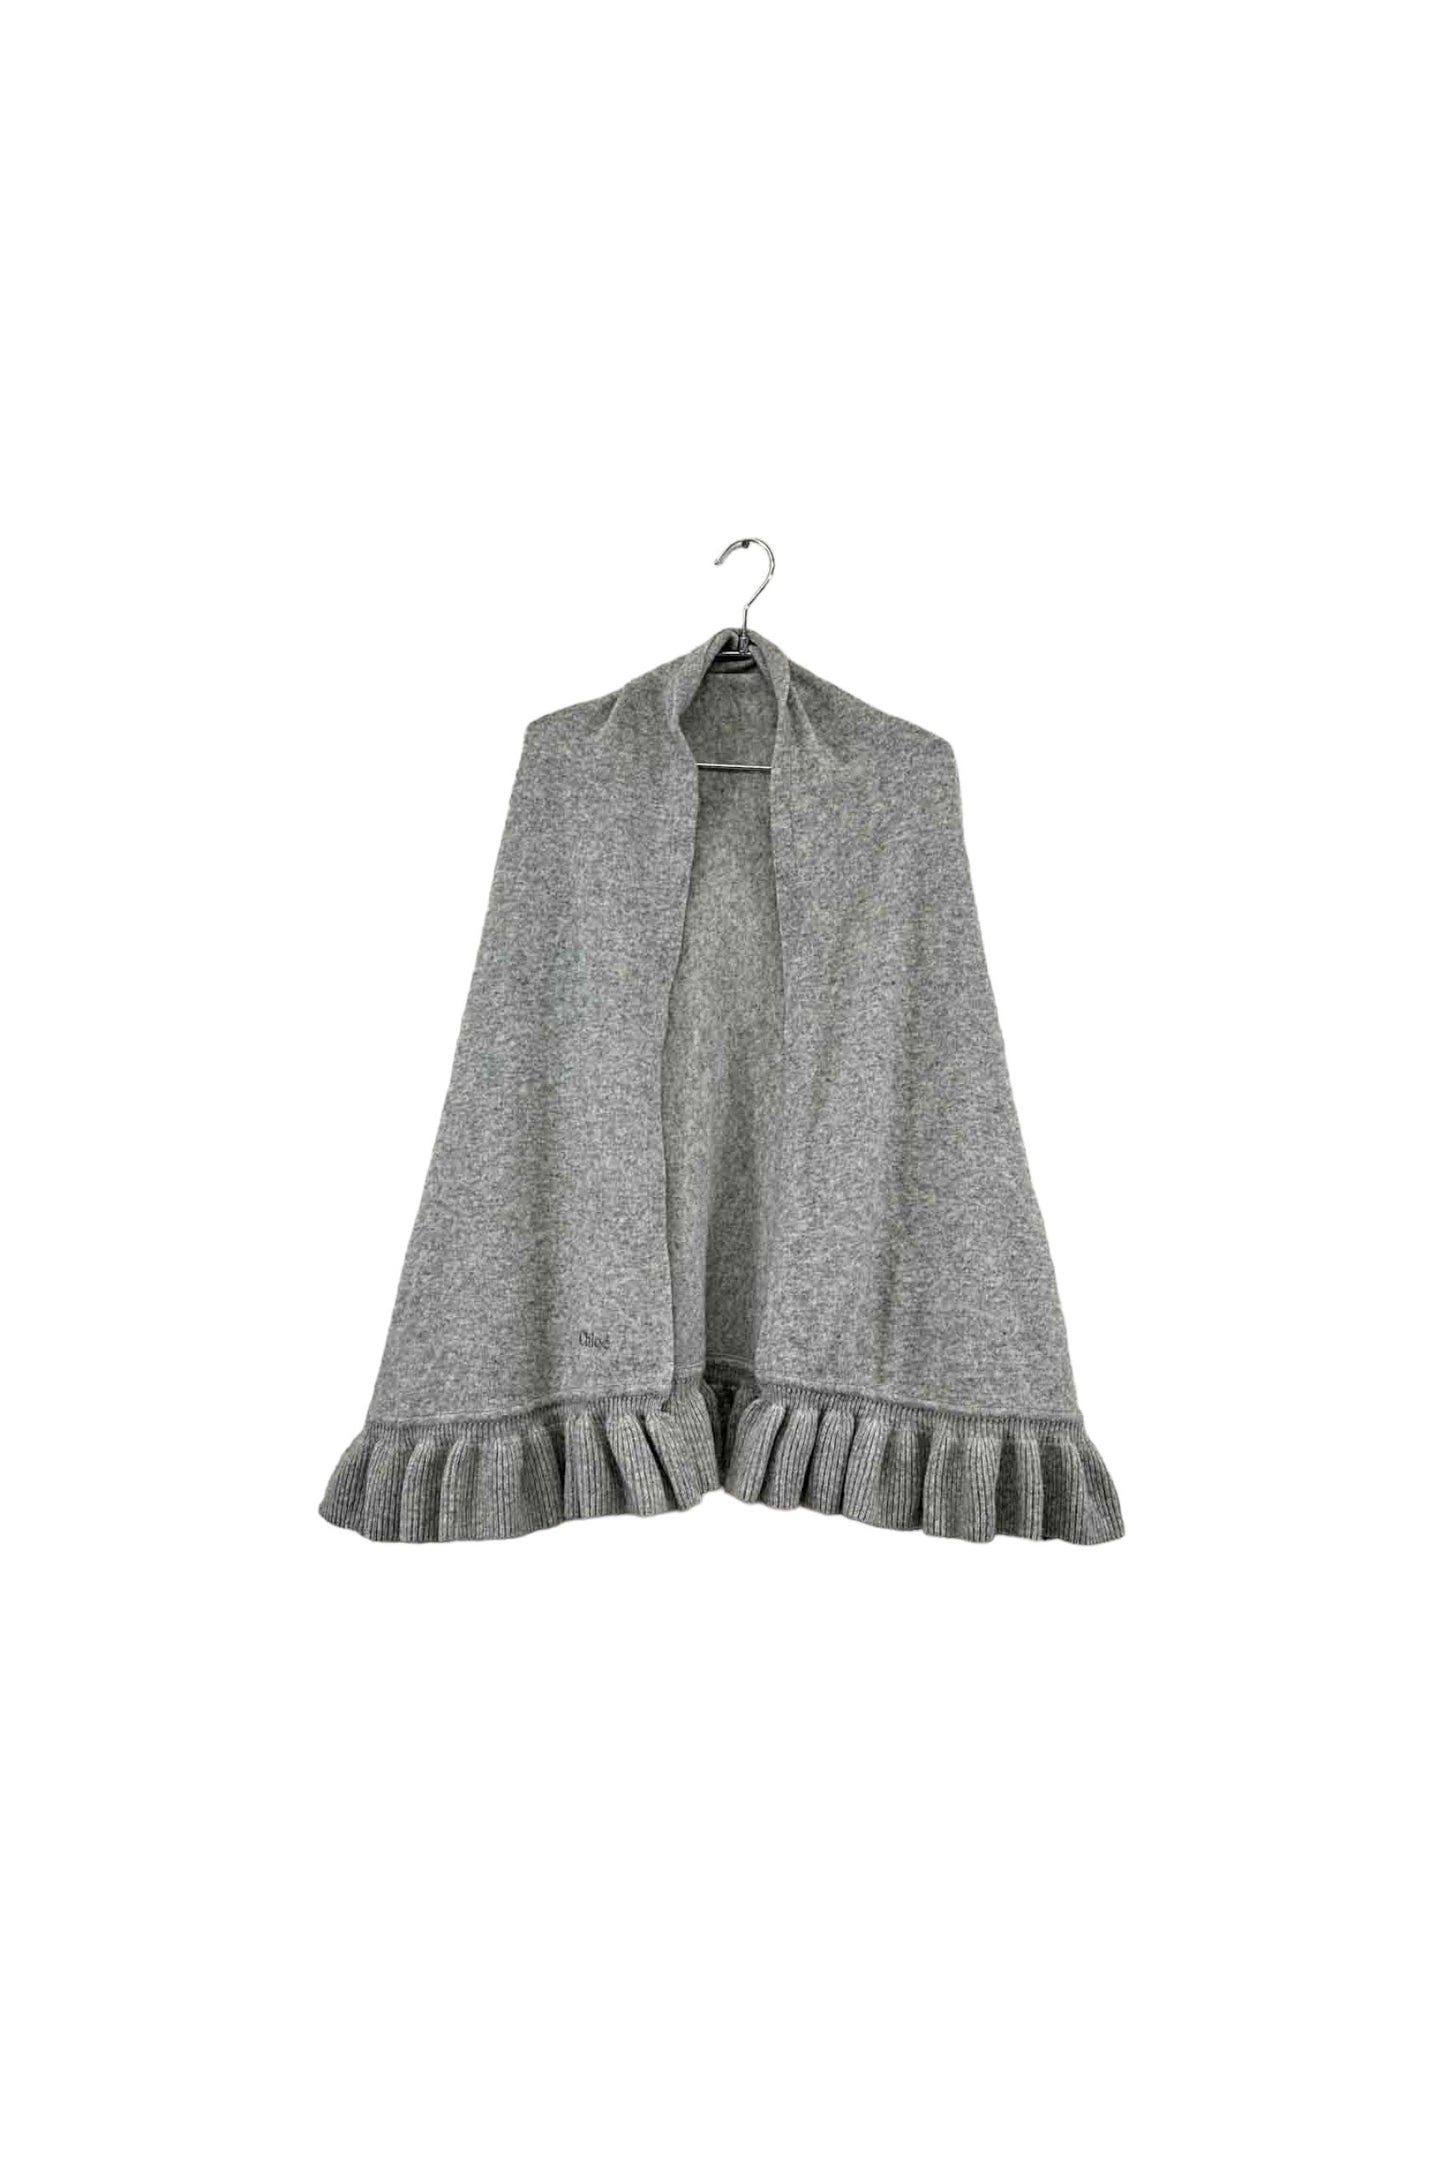 Chloe gray frills shawl